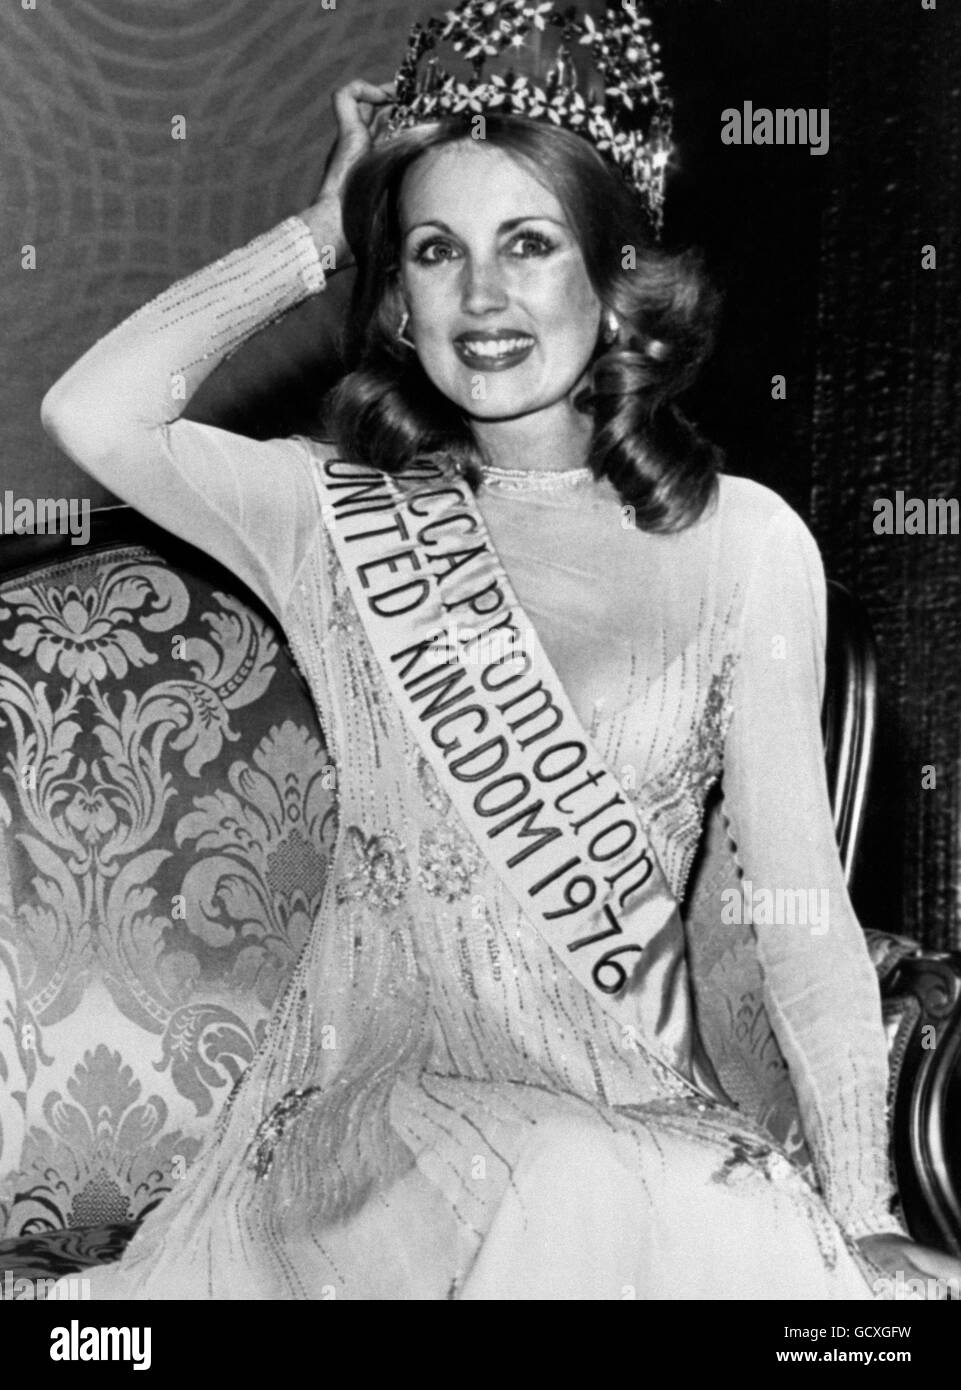 Concours de beauté - Miss Royaume-Uni - Blackpool.Carol Grant, Mlle Scotland, qui a été couronnée Miss Royaume-Uni lors de la finale à Blackpool. Banque D'Images